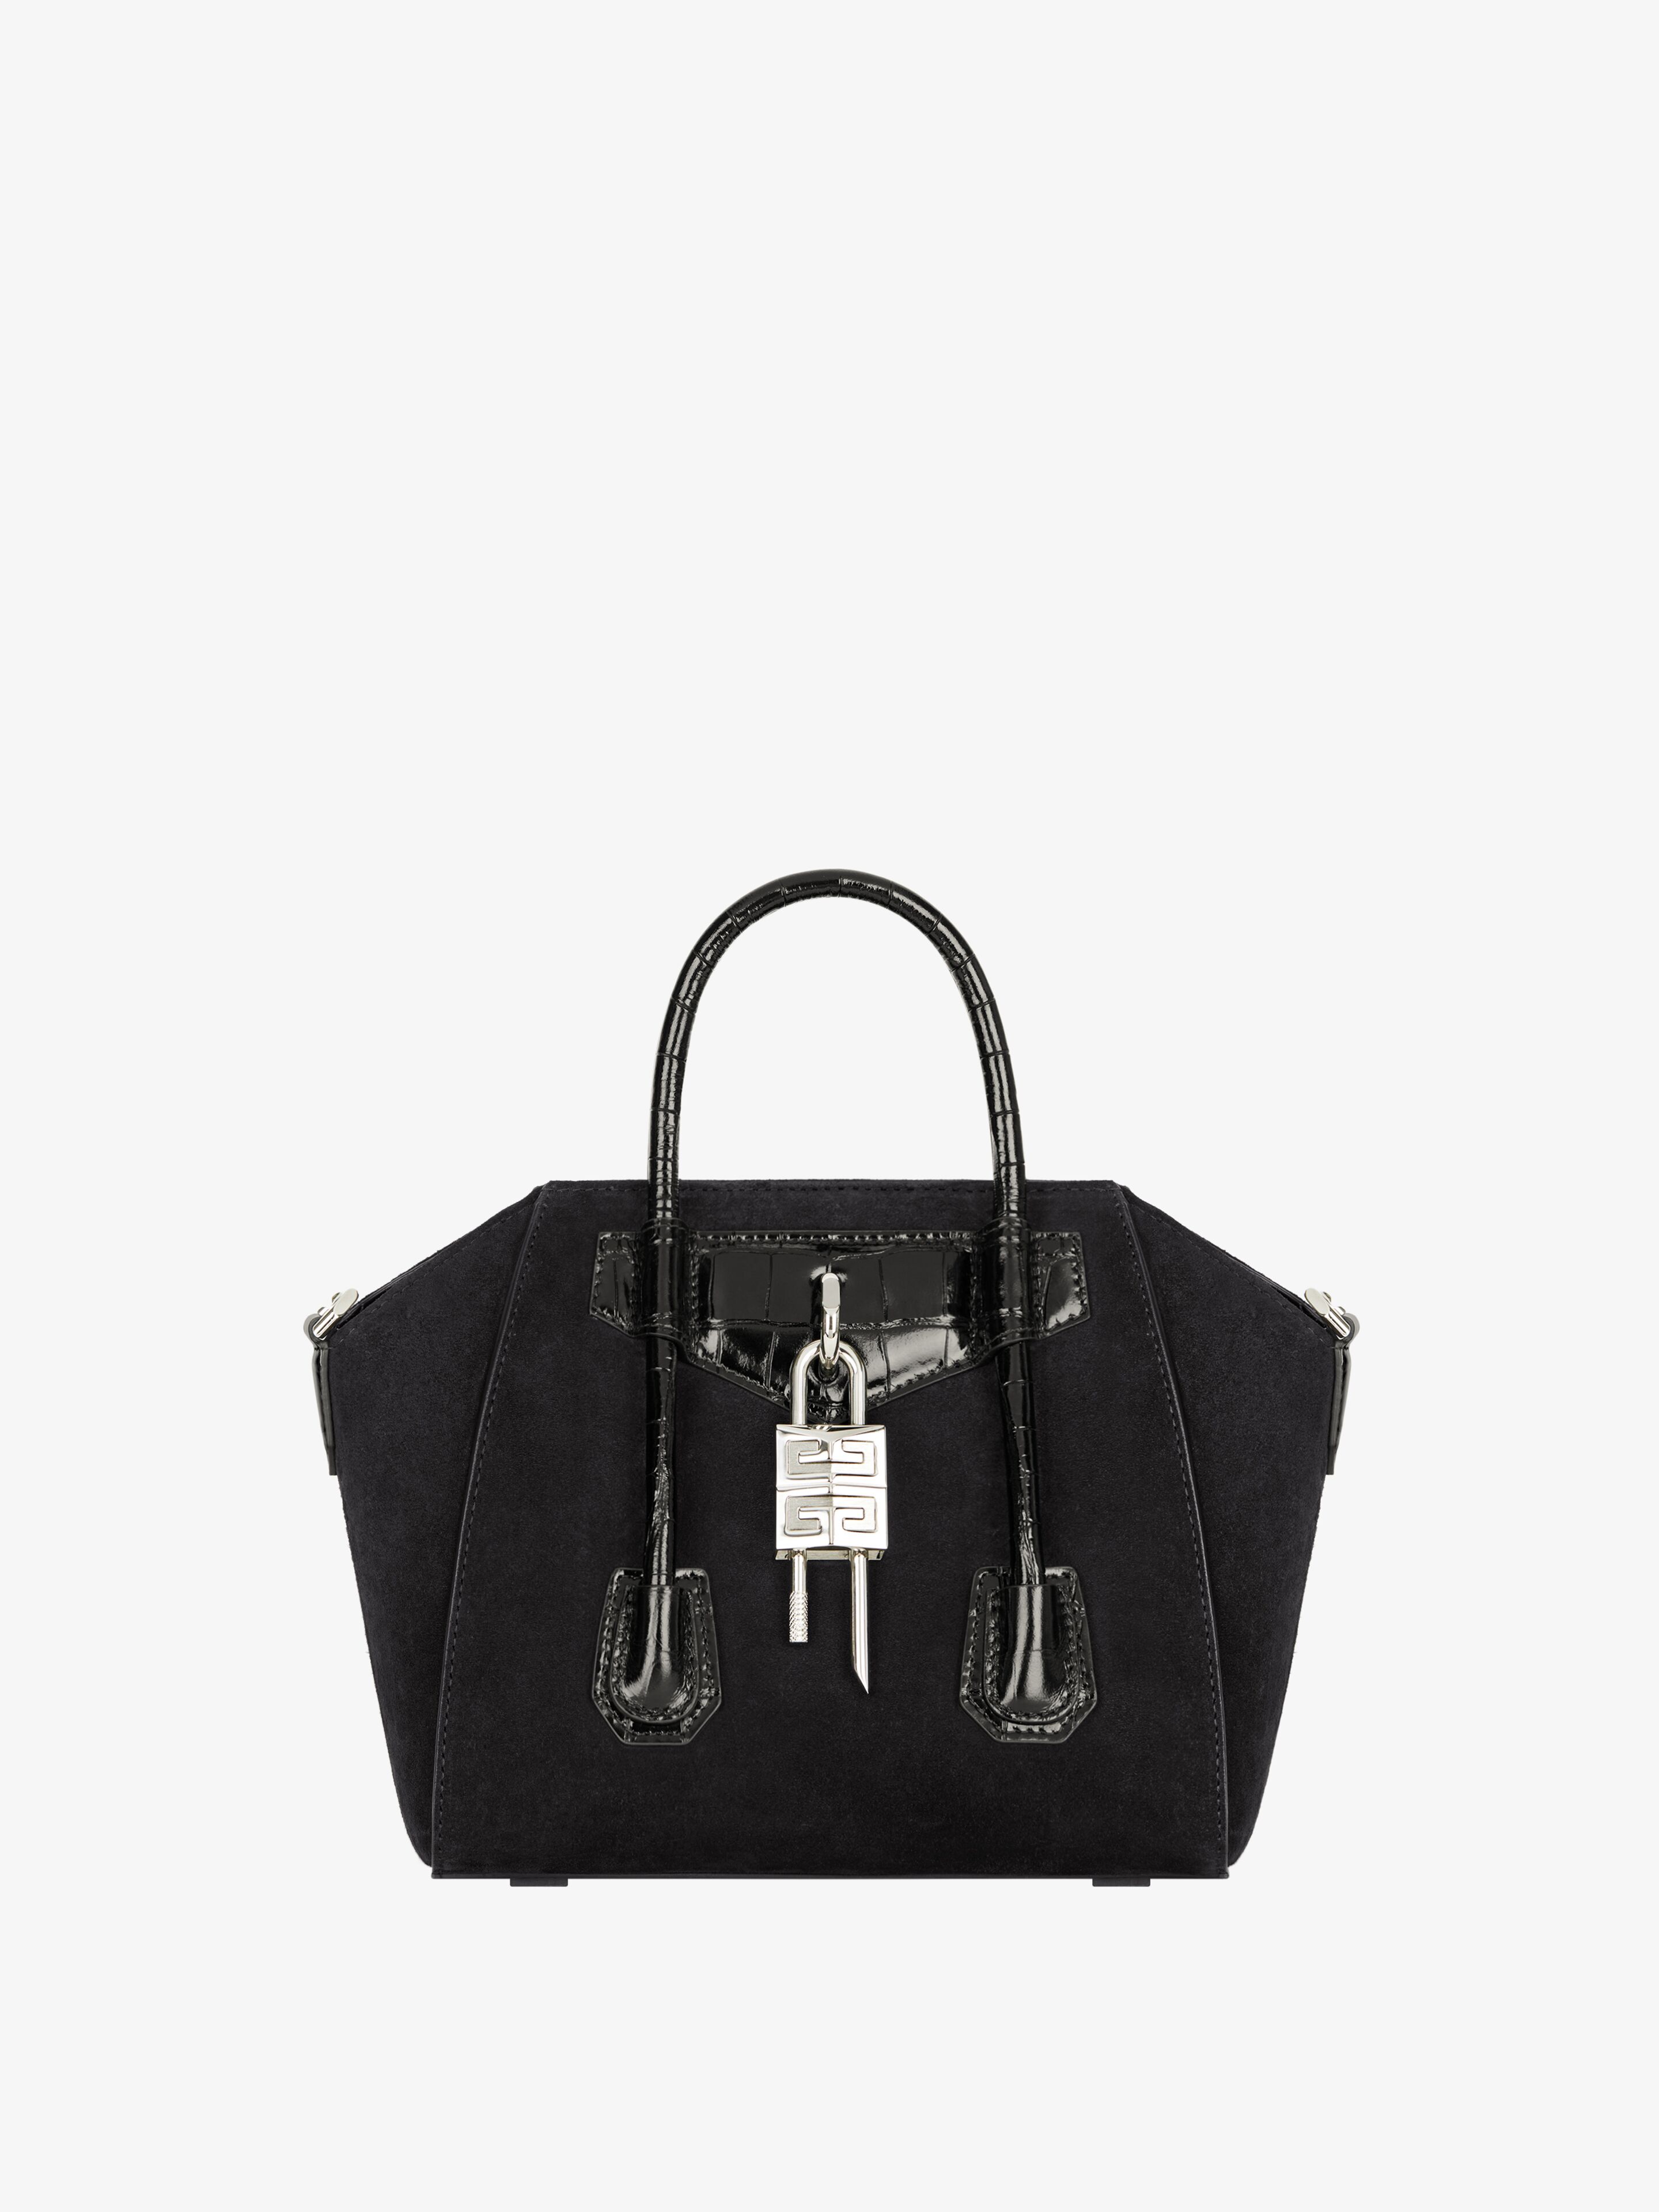 Givenchy Women's Mini Antigona Lock Top Handle Bag In Suede In Multicolor